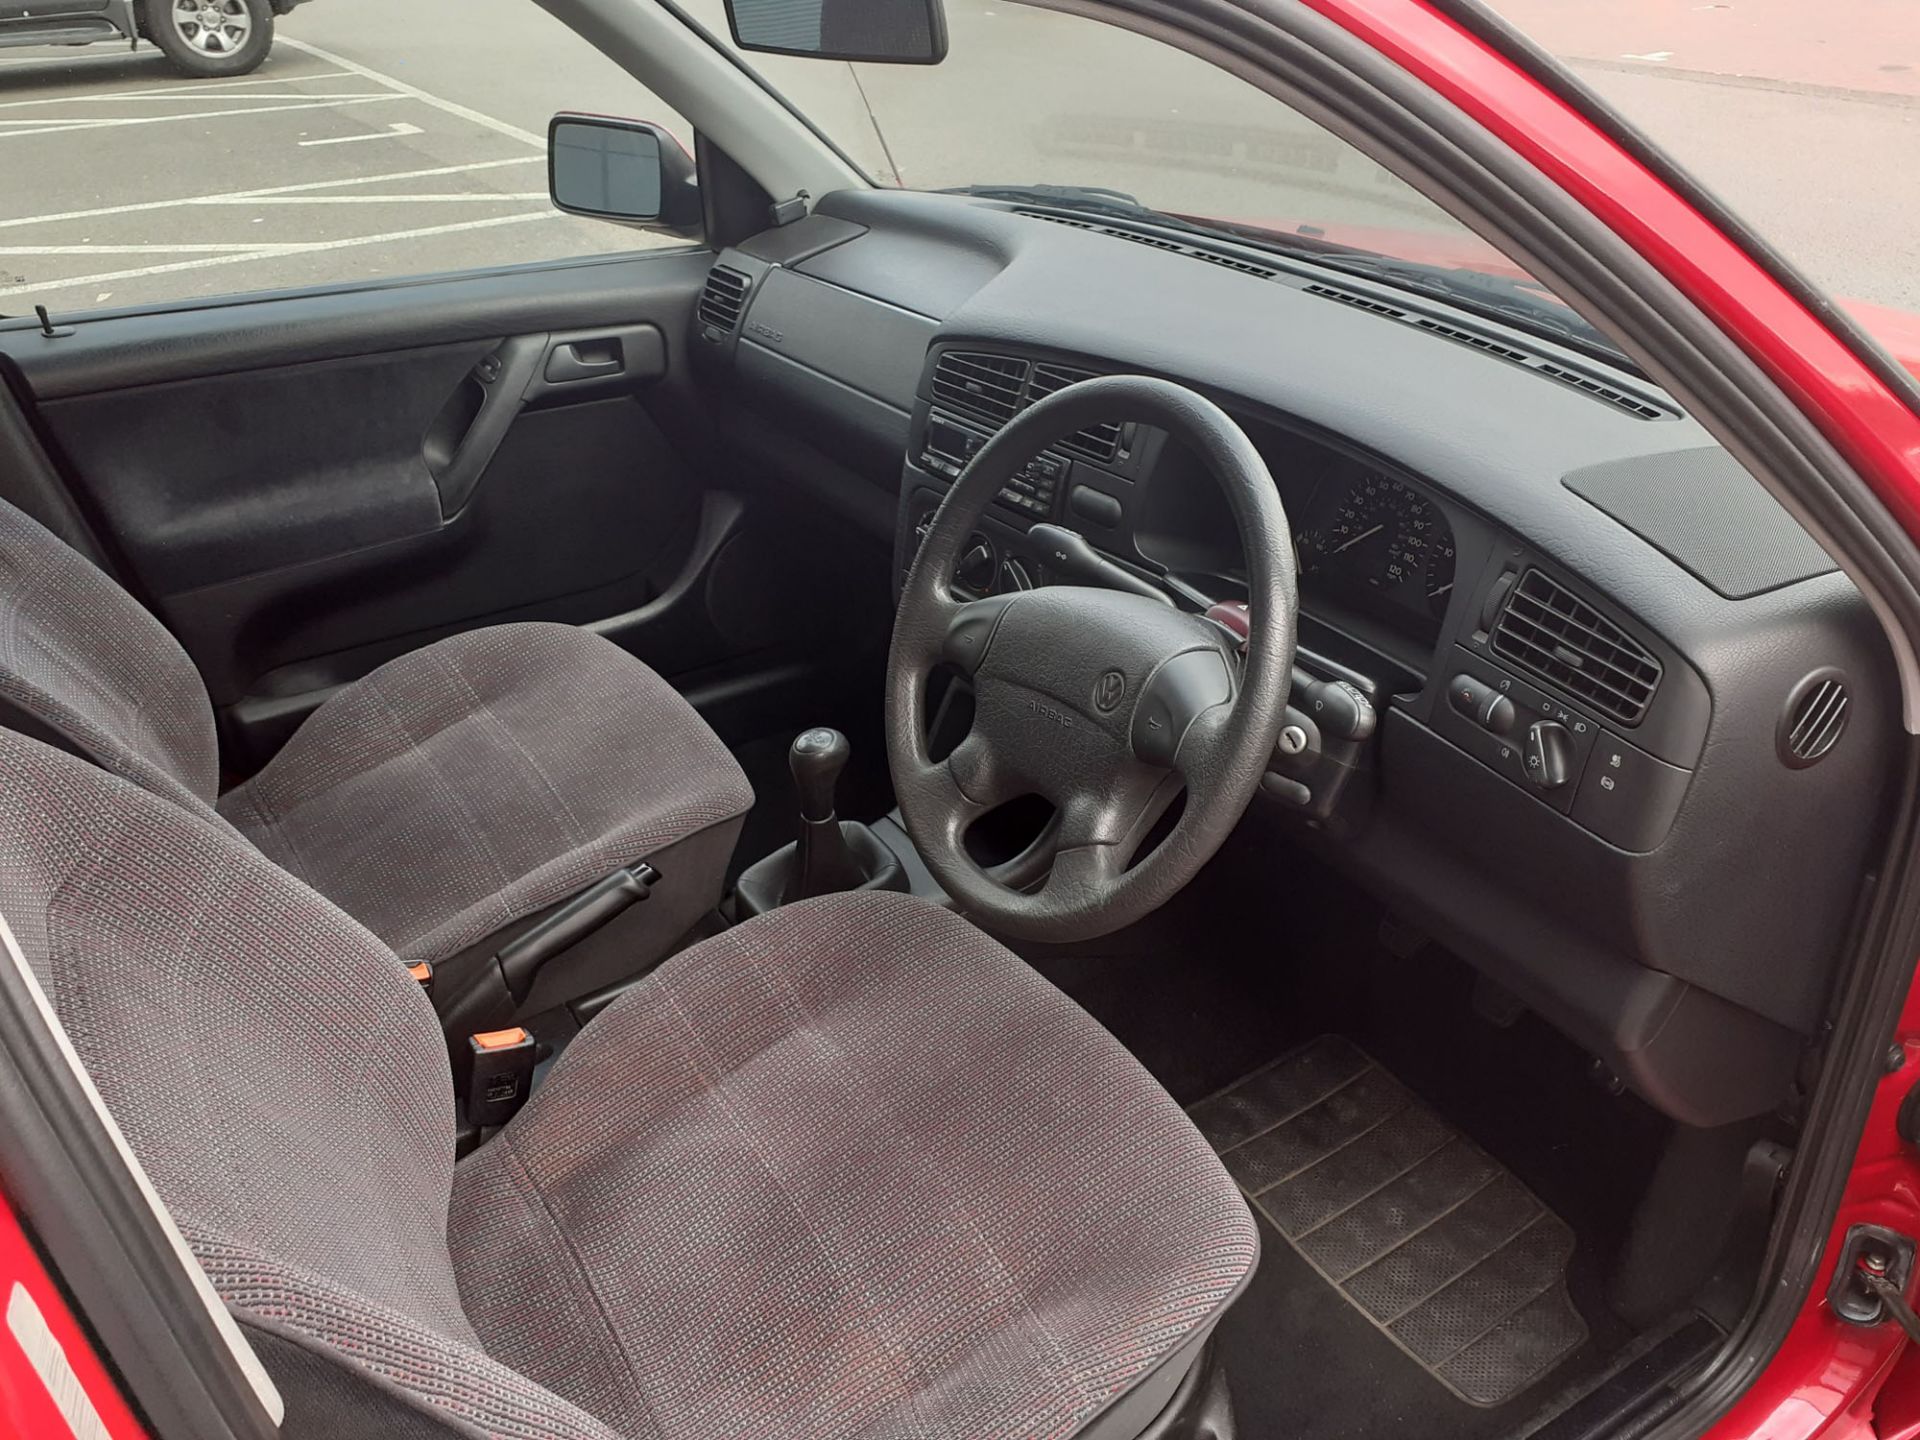 M270 MHV Volkswagen Golf GL TDI, 5 door hatchback in red, 1896cc, first registered 08/03/1995, V5 - Image 5 of 11